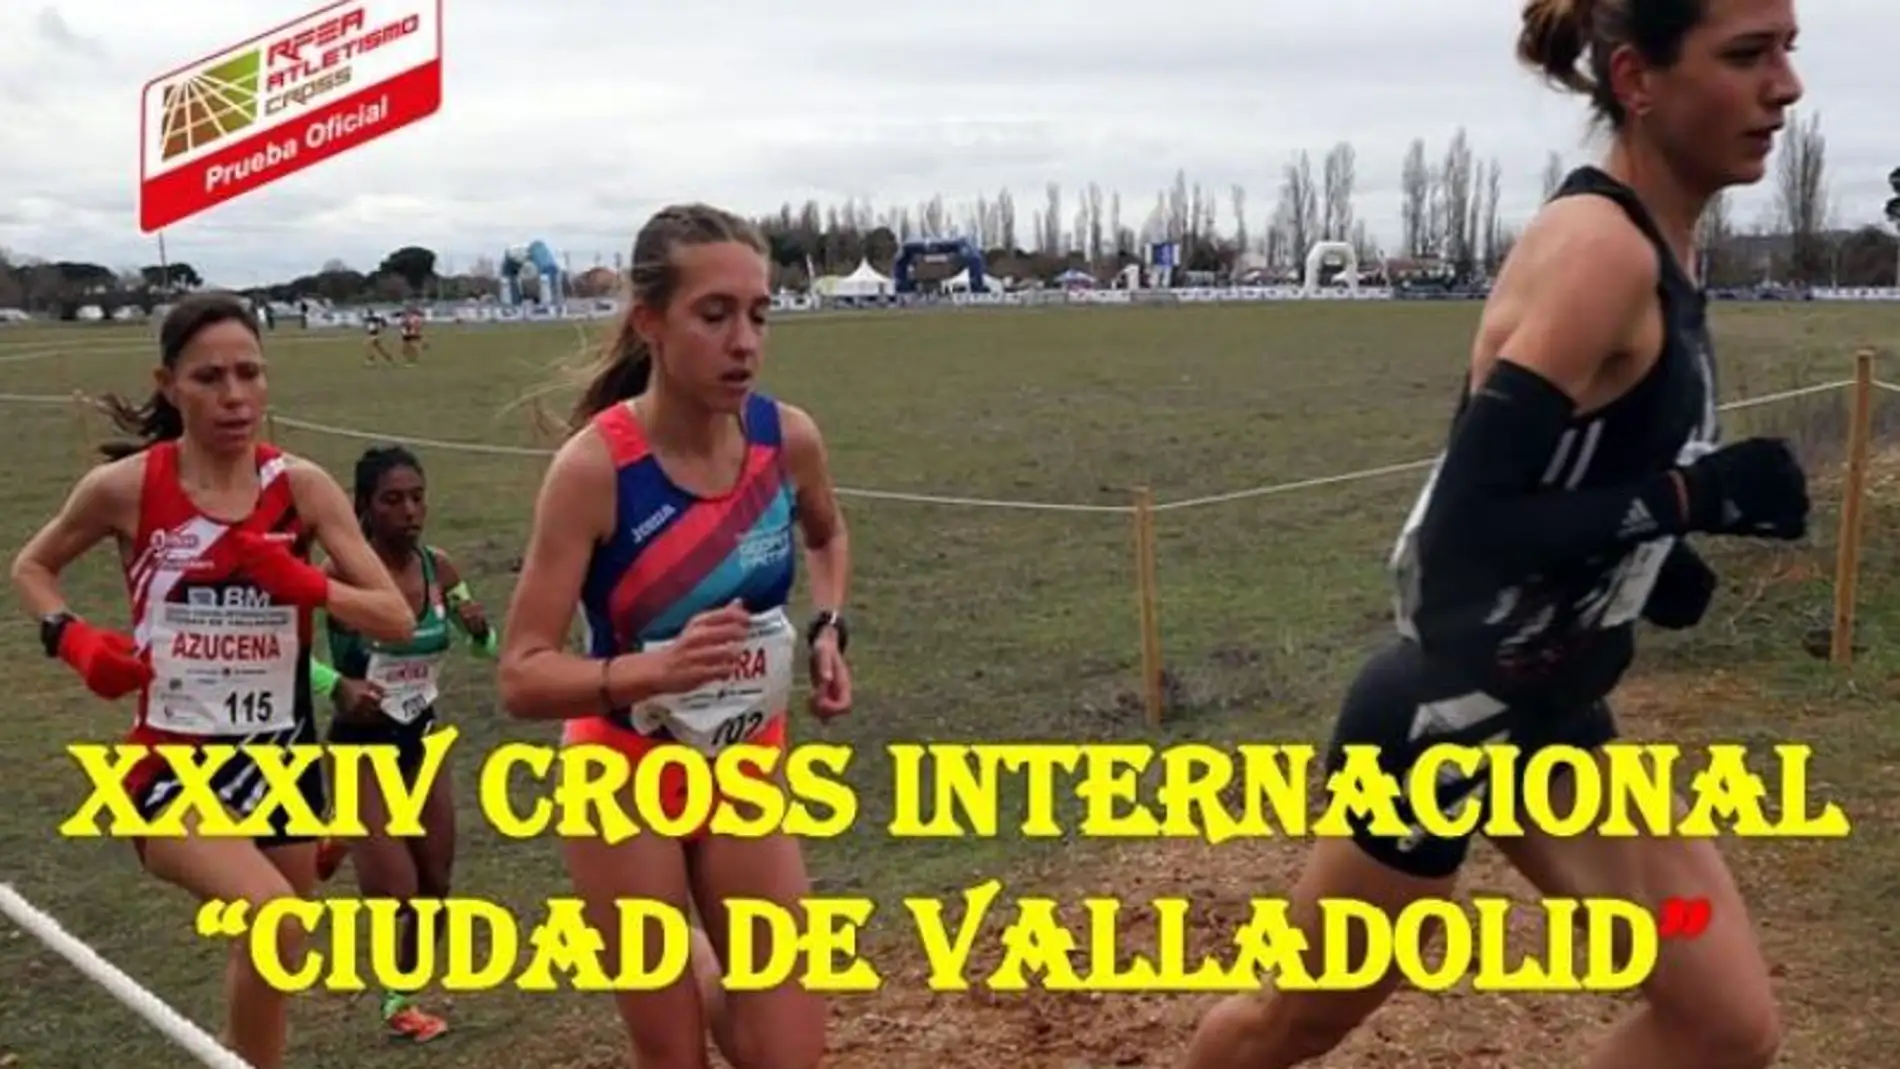 El XXXIV Cross Internacional “ciudad de Valladolid” se celebra este domingo 16 de enero